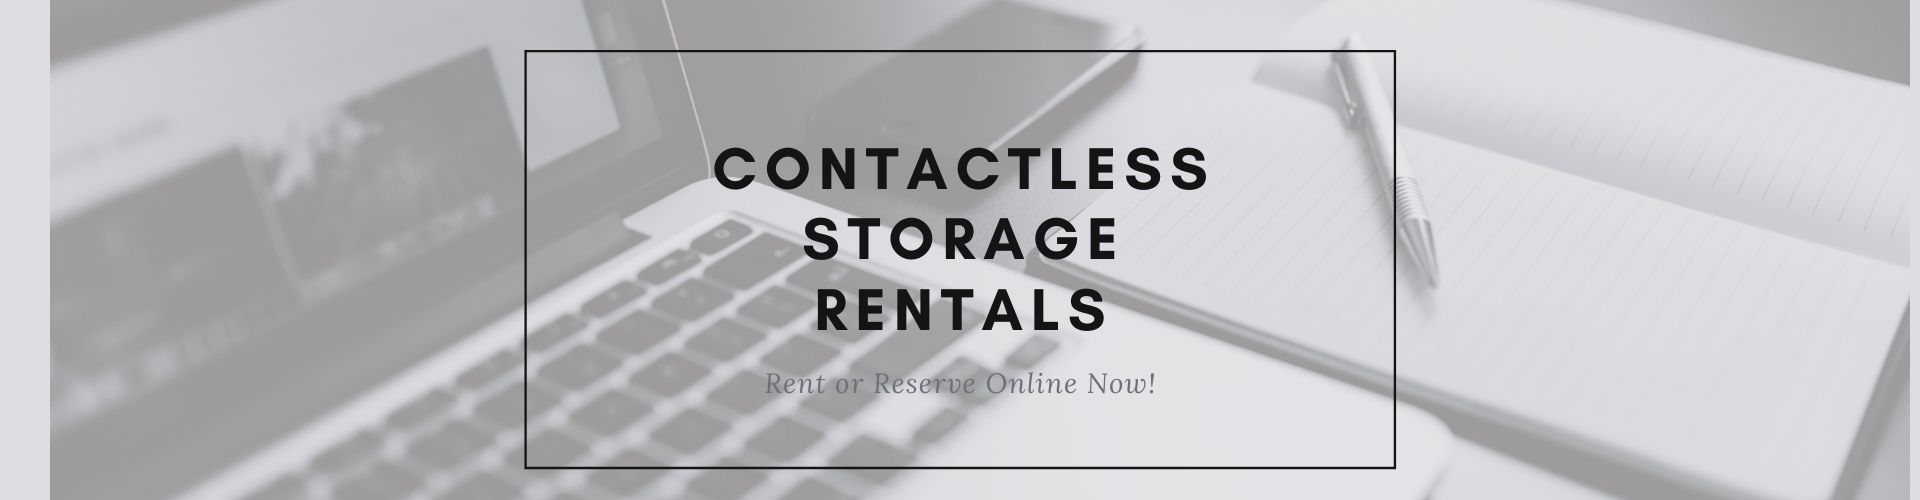 contactless storage rentals in Virginia Beach VA